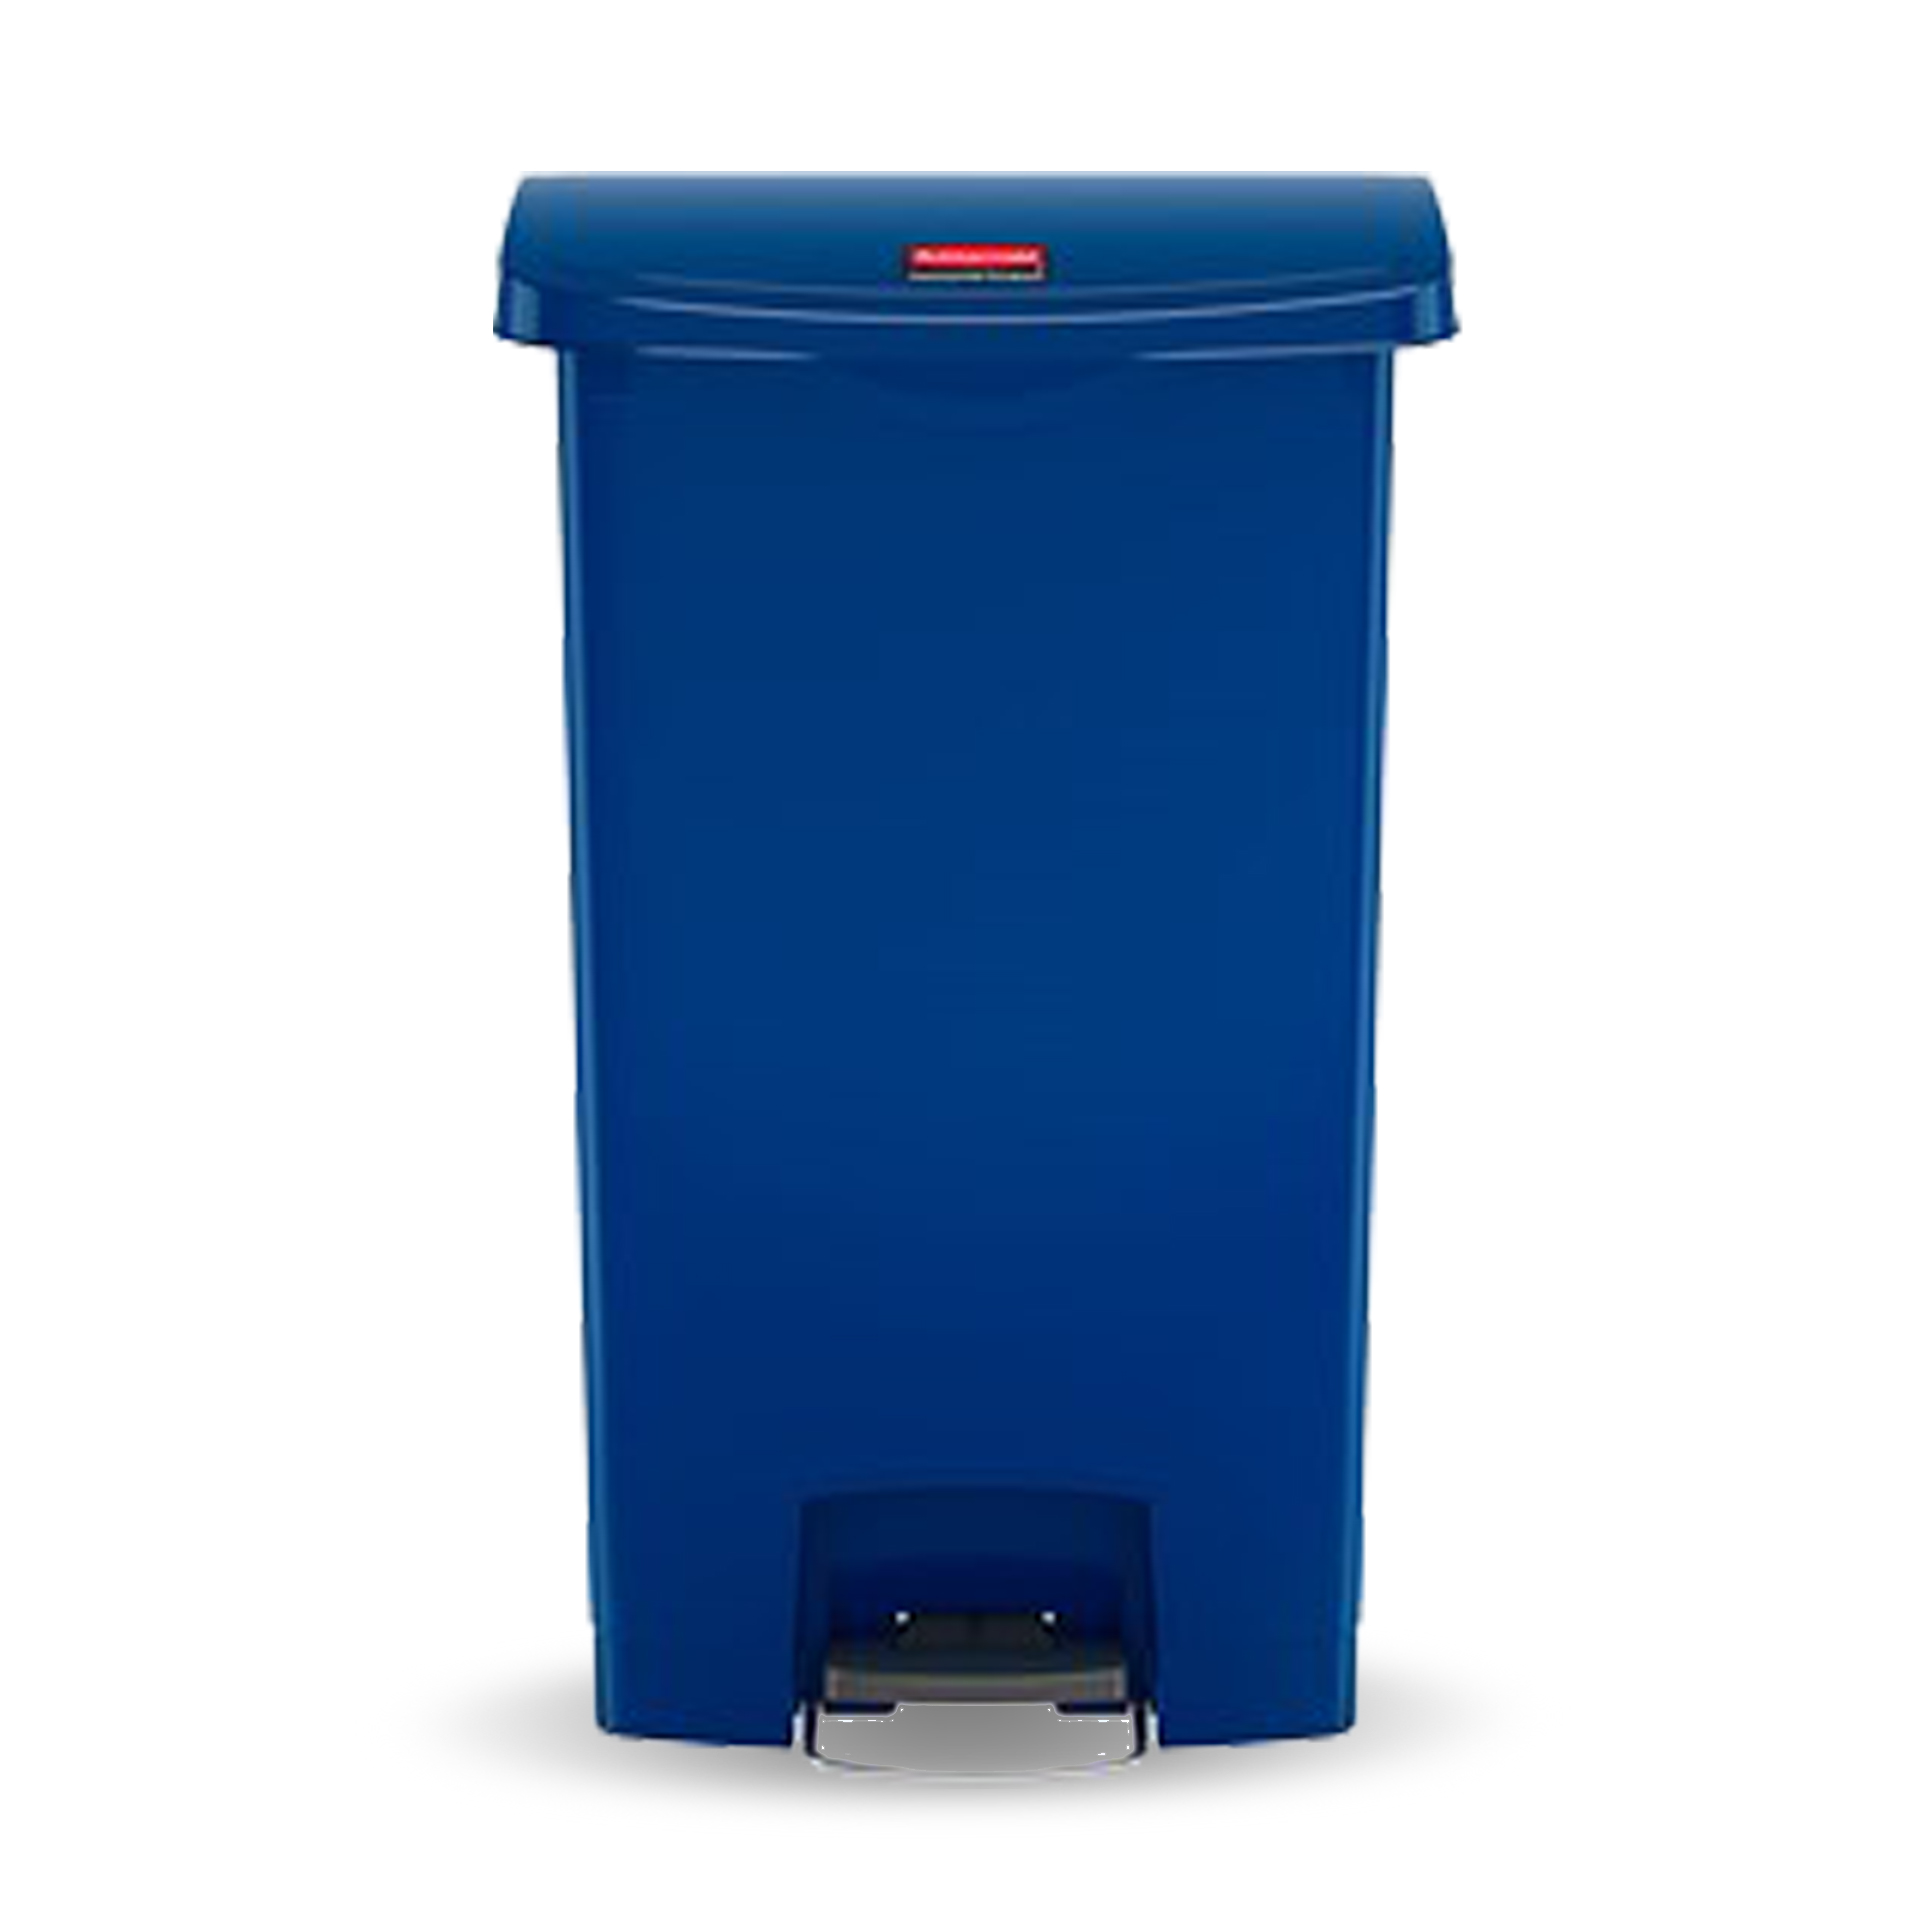 ถังขยะแบบเท้าเหยียบ Slim Jim® Step-On Container ขนาด 50 ลิตร สีน้ำเงิน